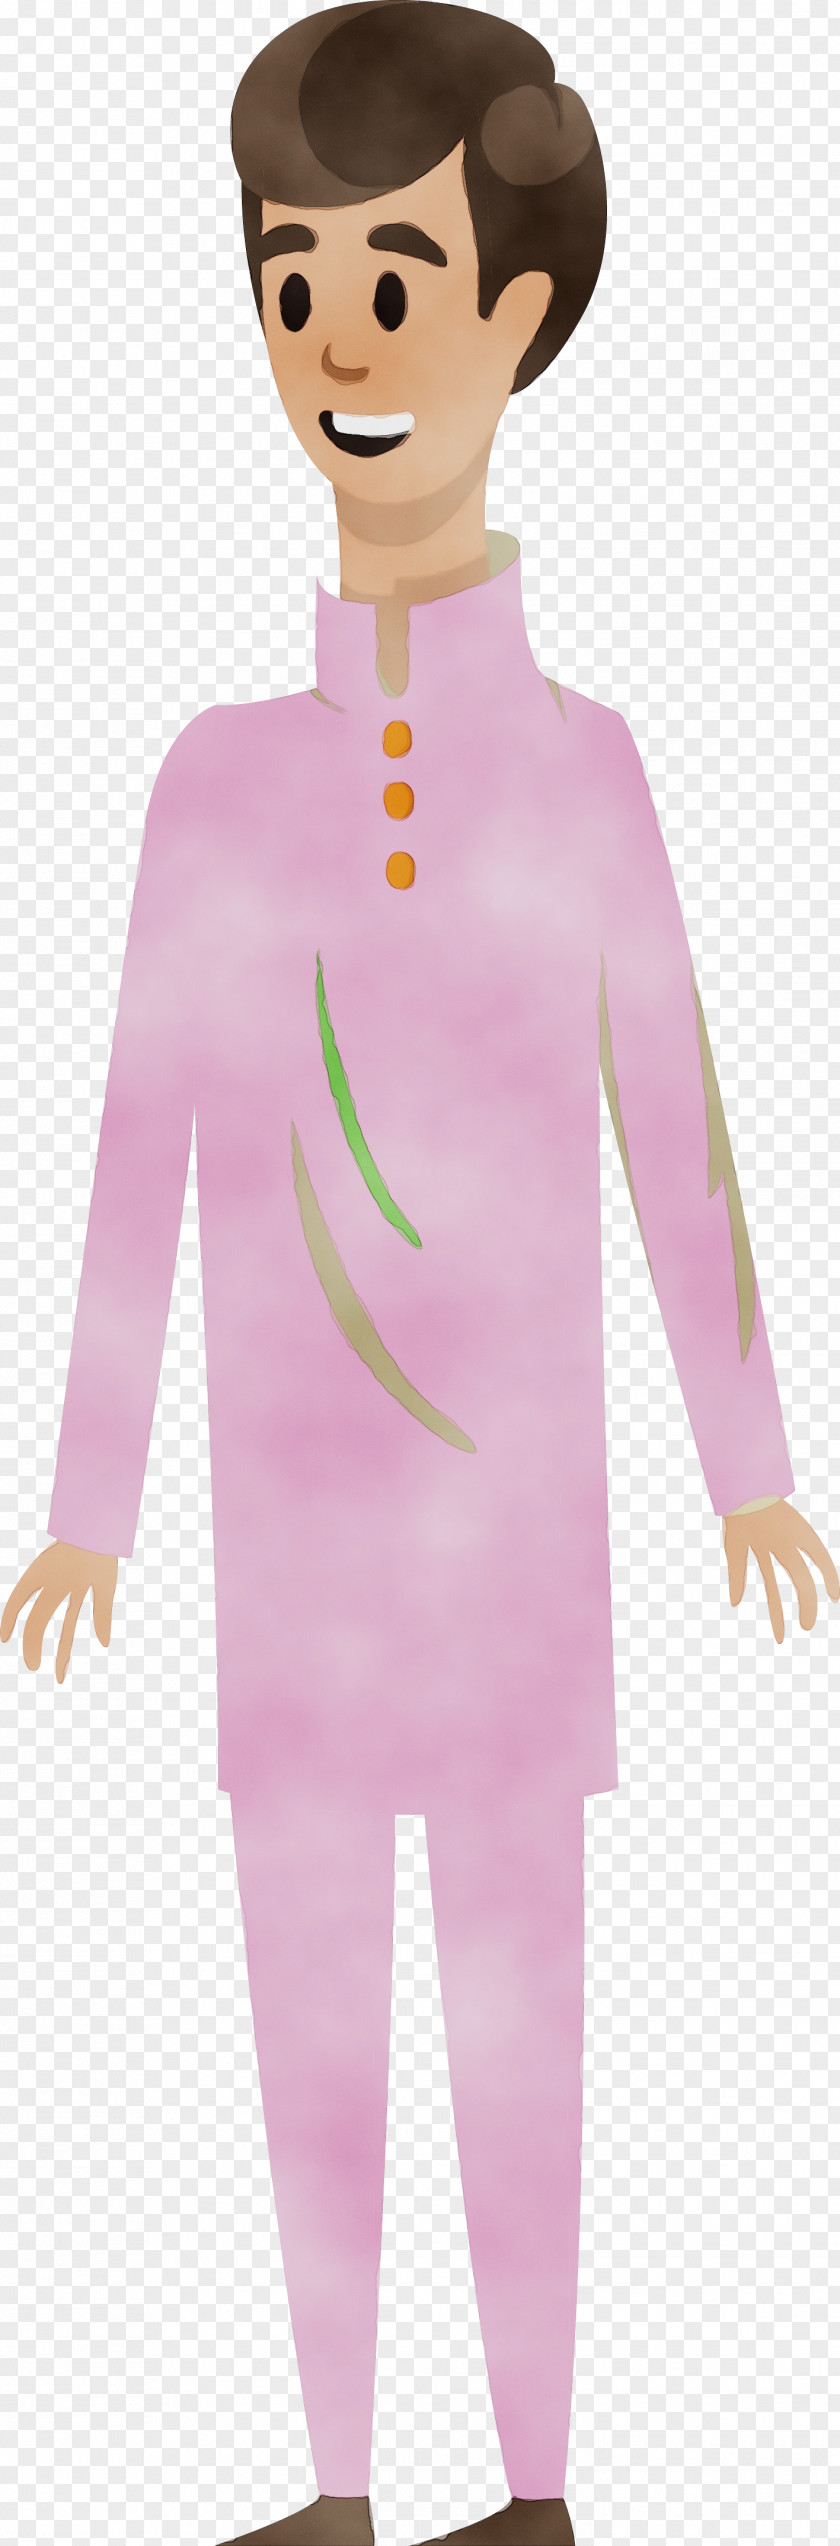 Cartoon Clothing Human Pink M Character PNG